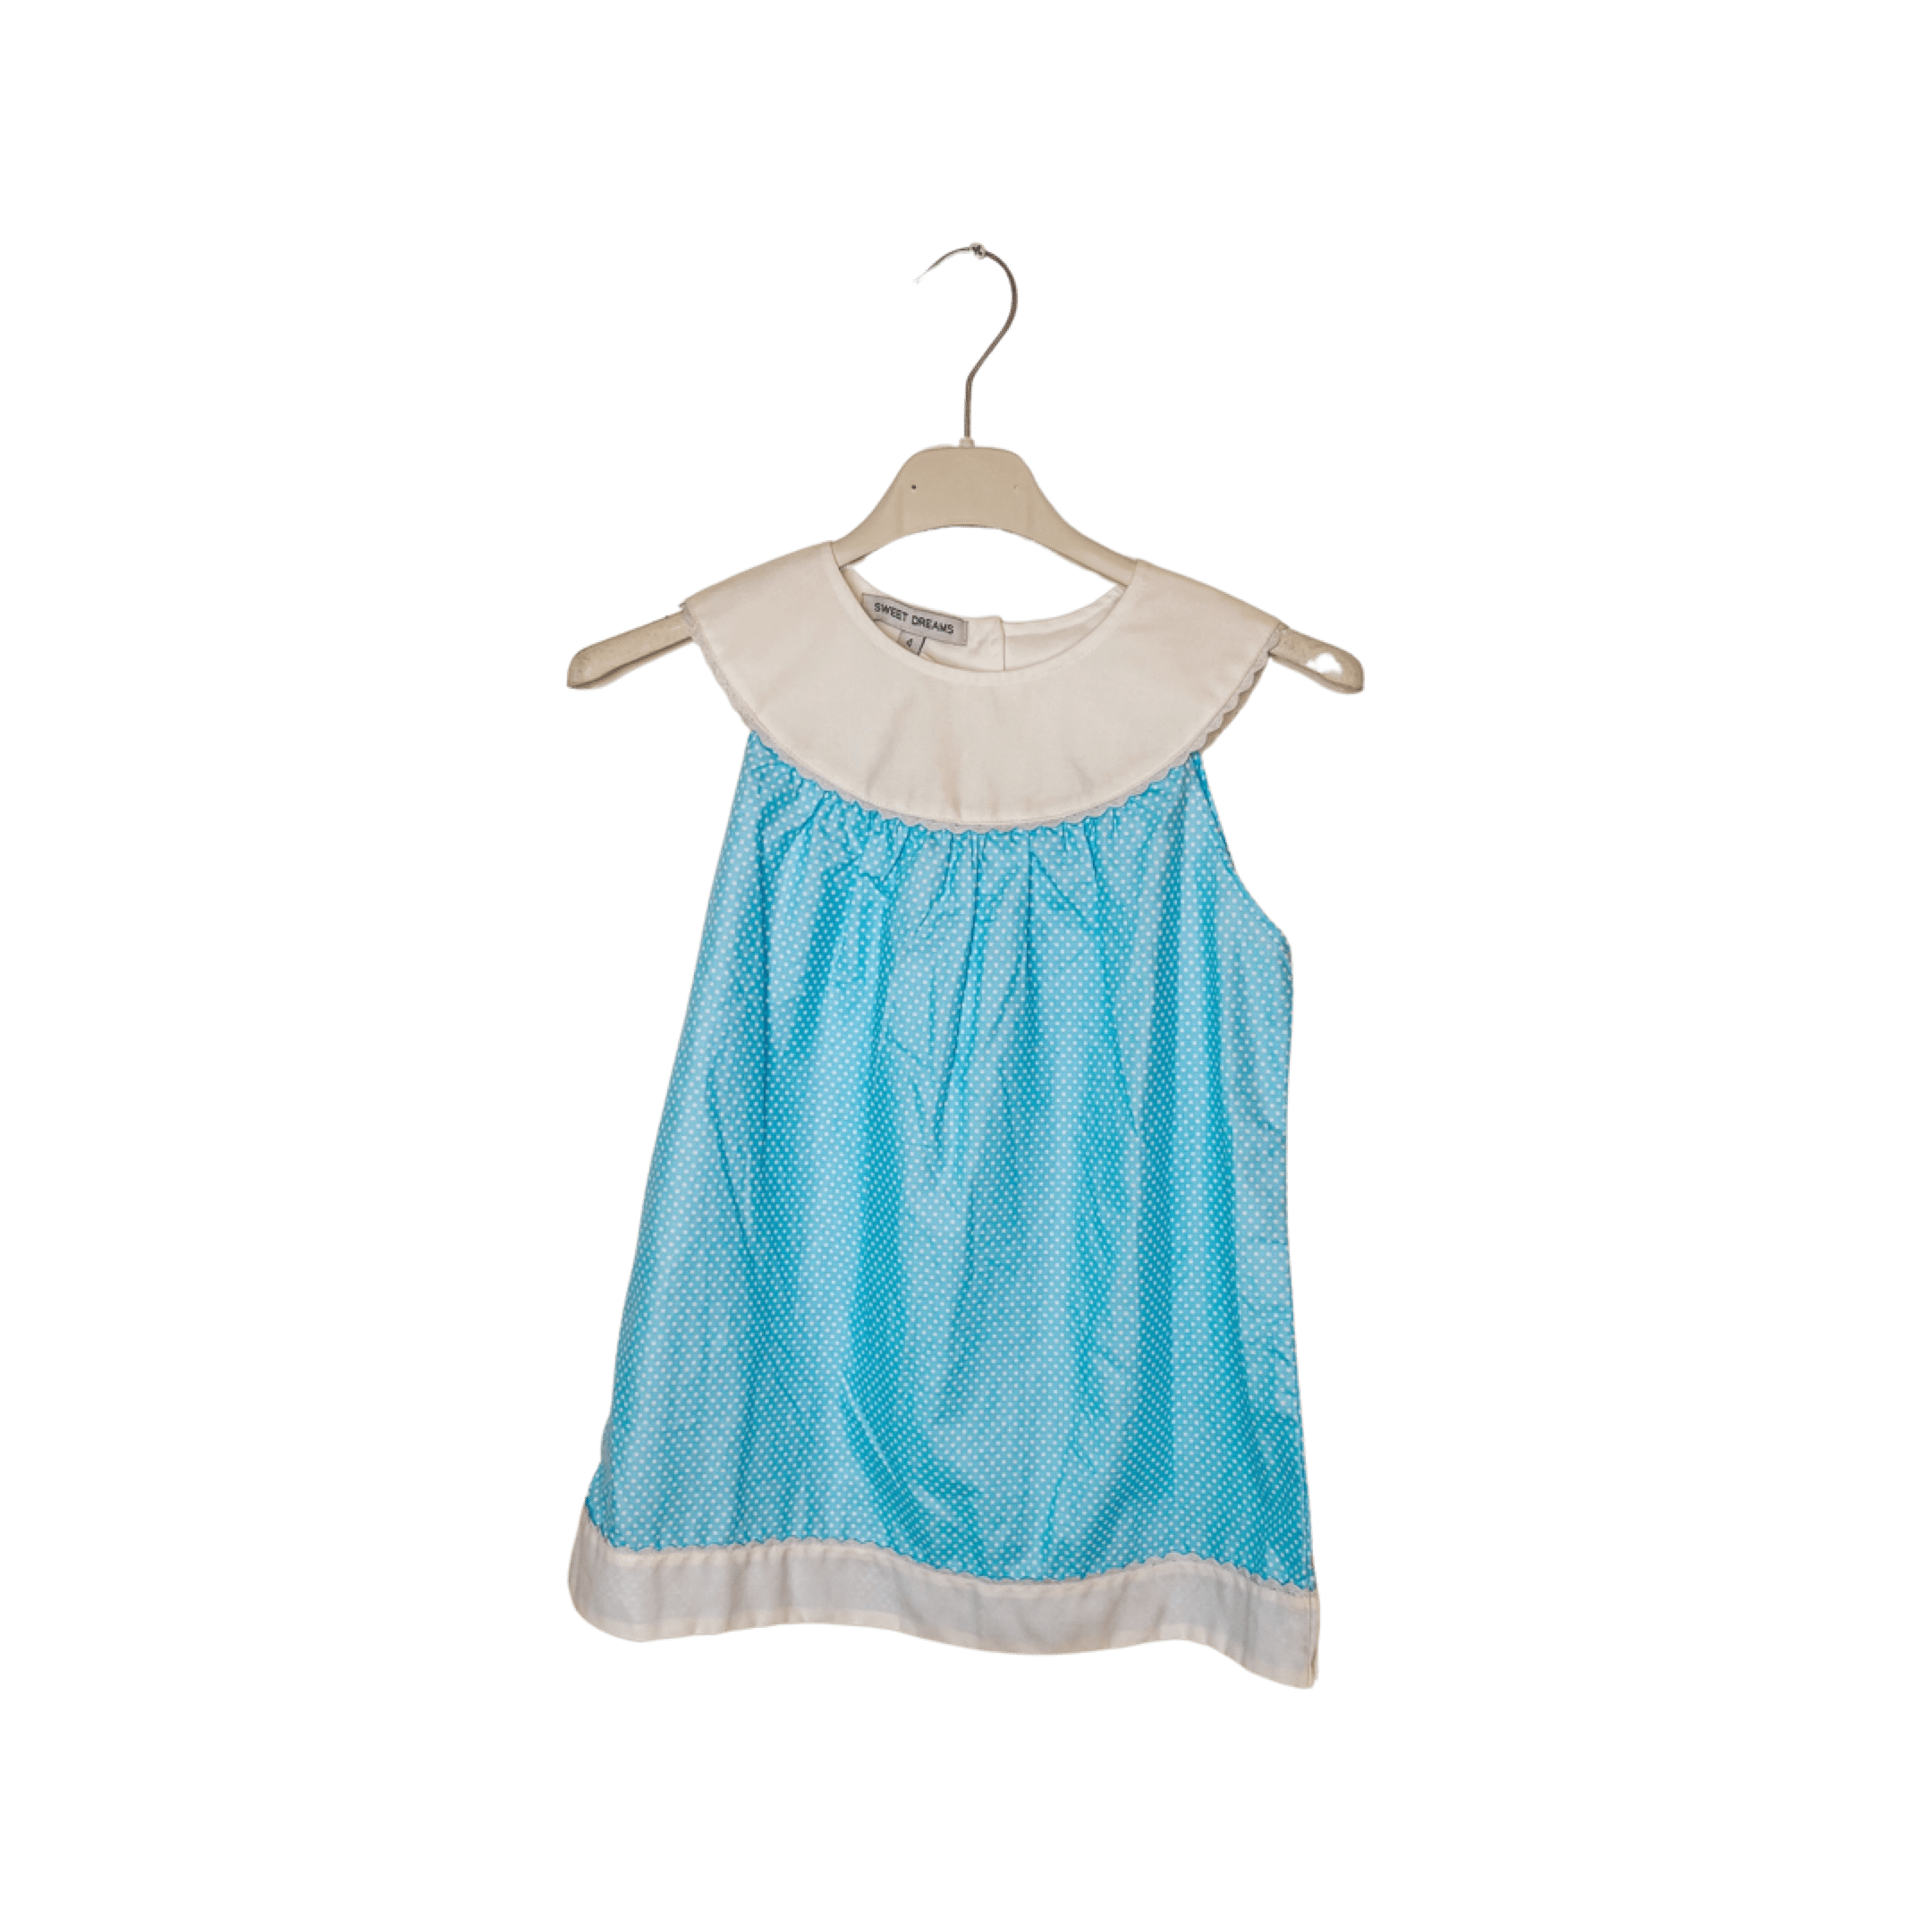 Duc Star Linens Blue Dot Dress - Little Miss Muffin Children & Home